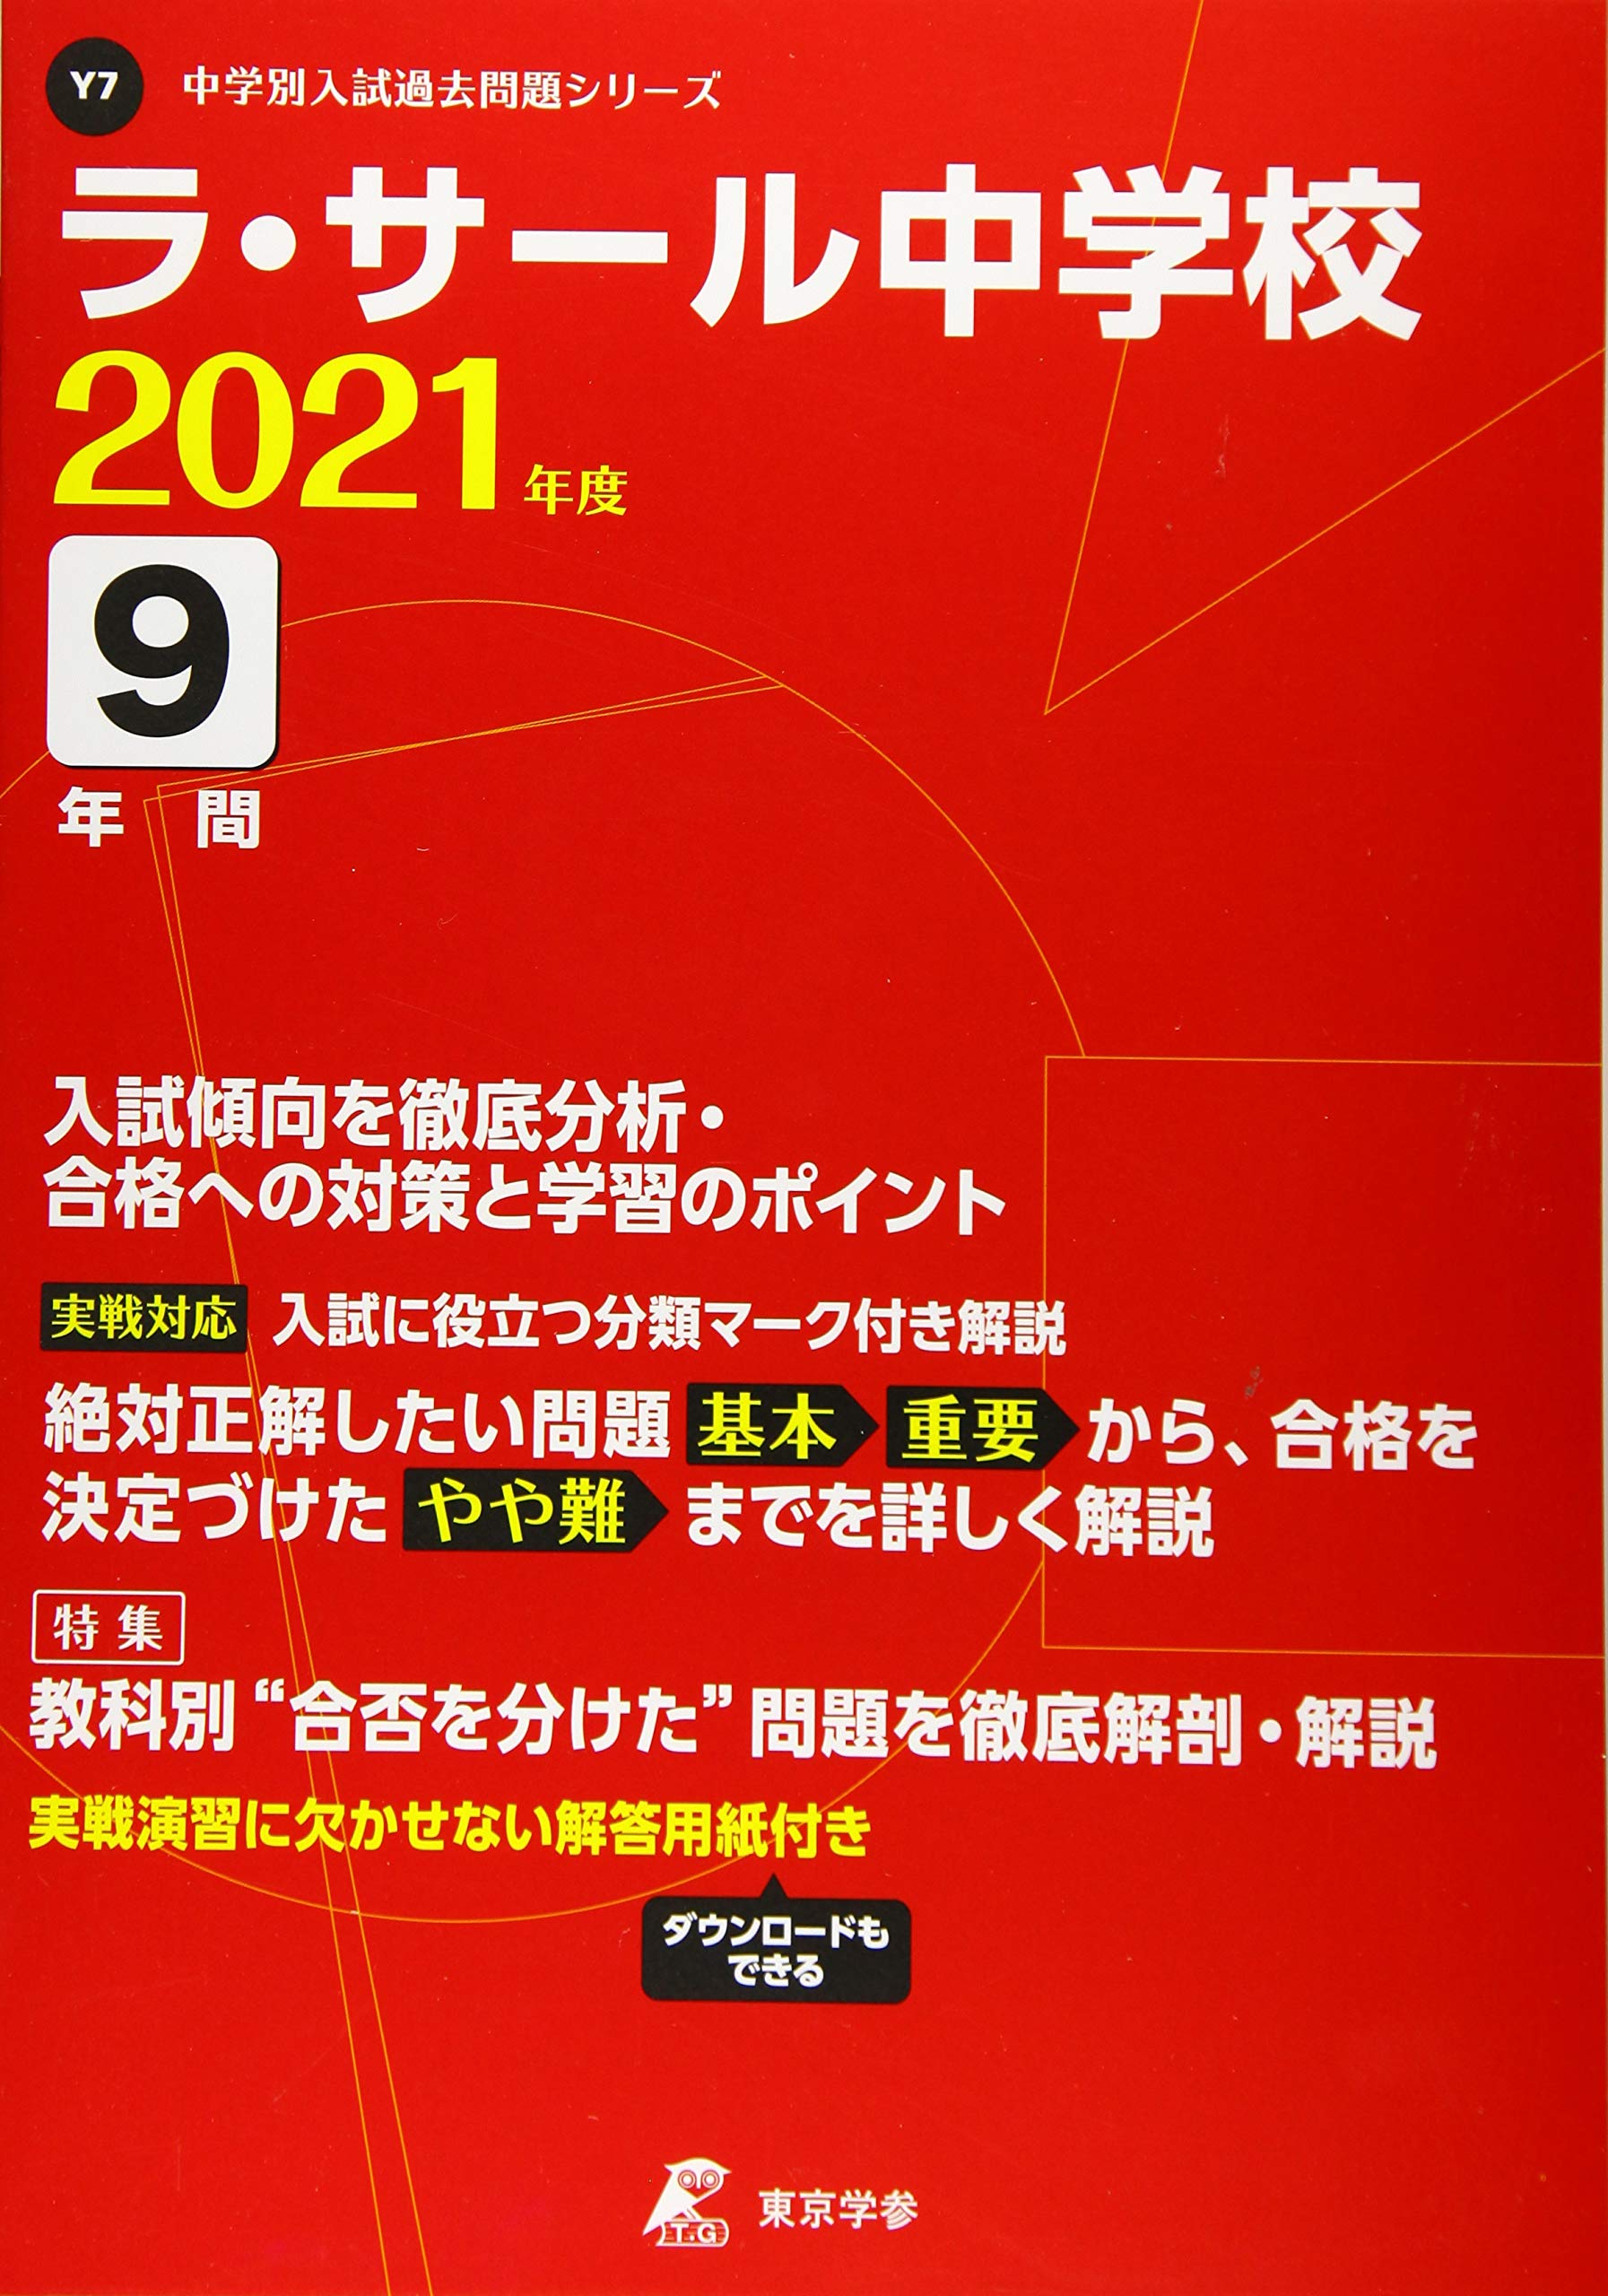 Y07_2021(Back_Number)